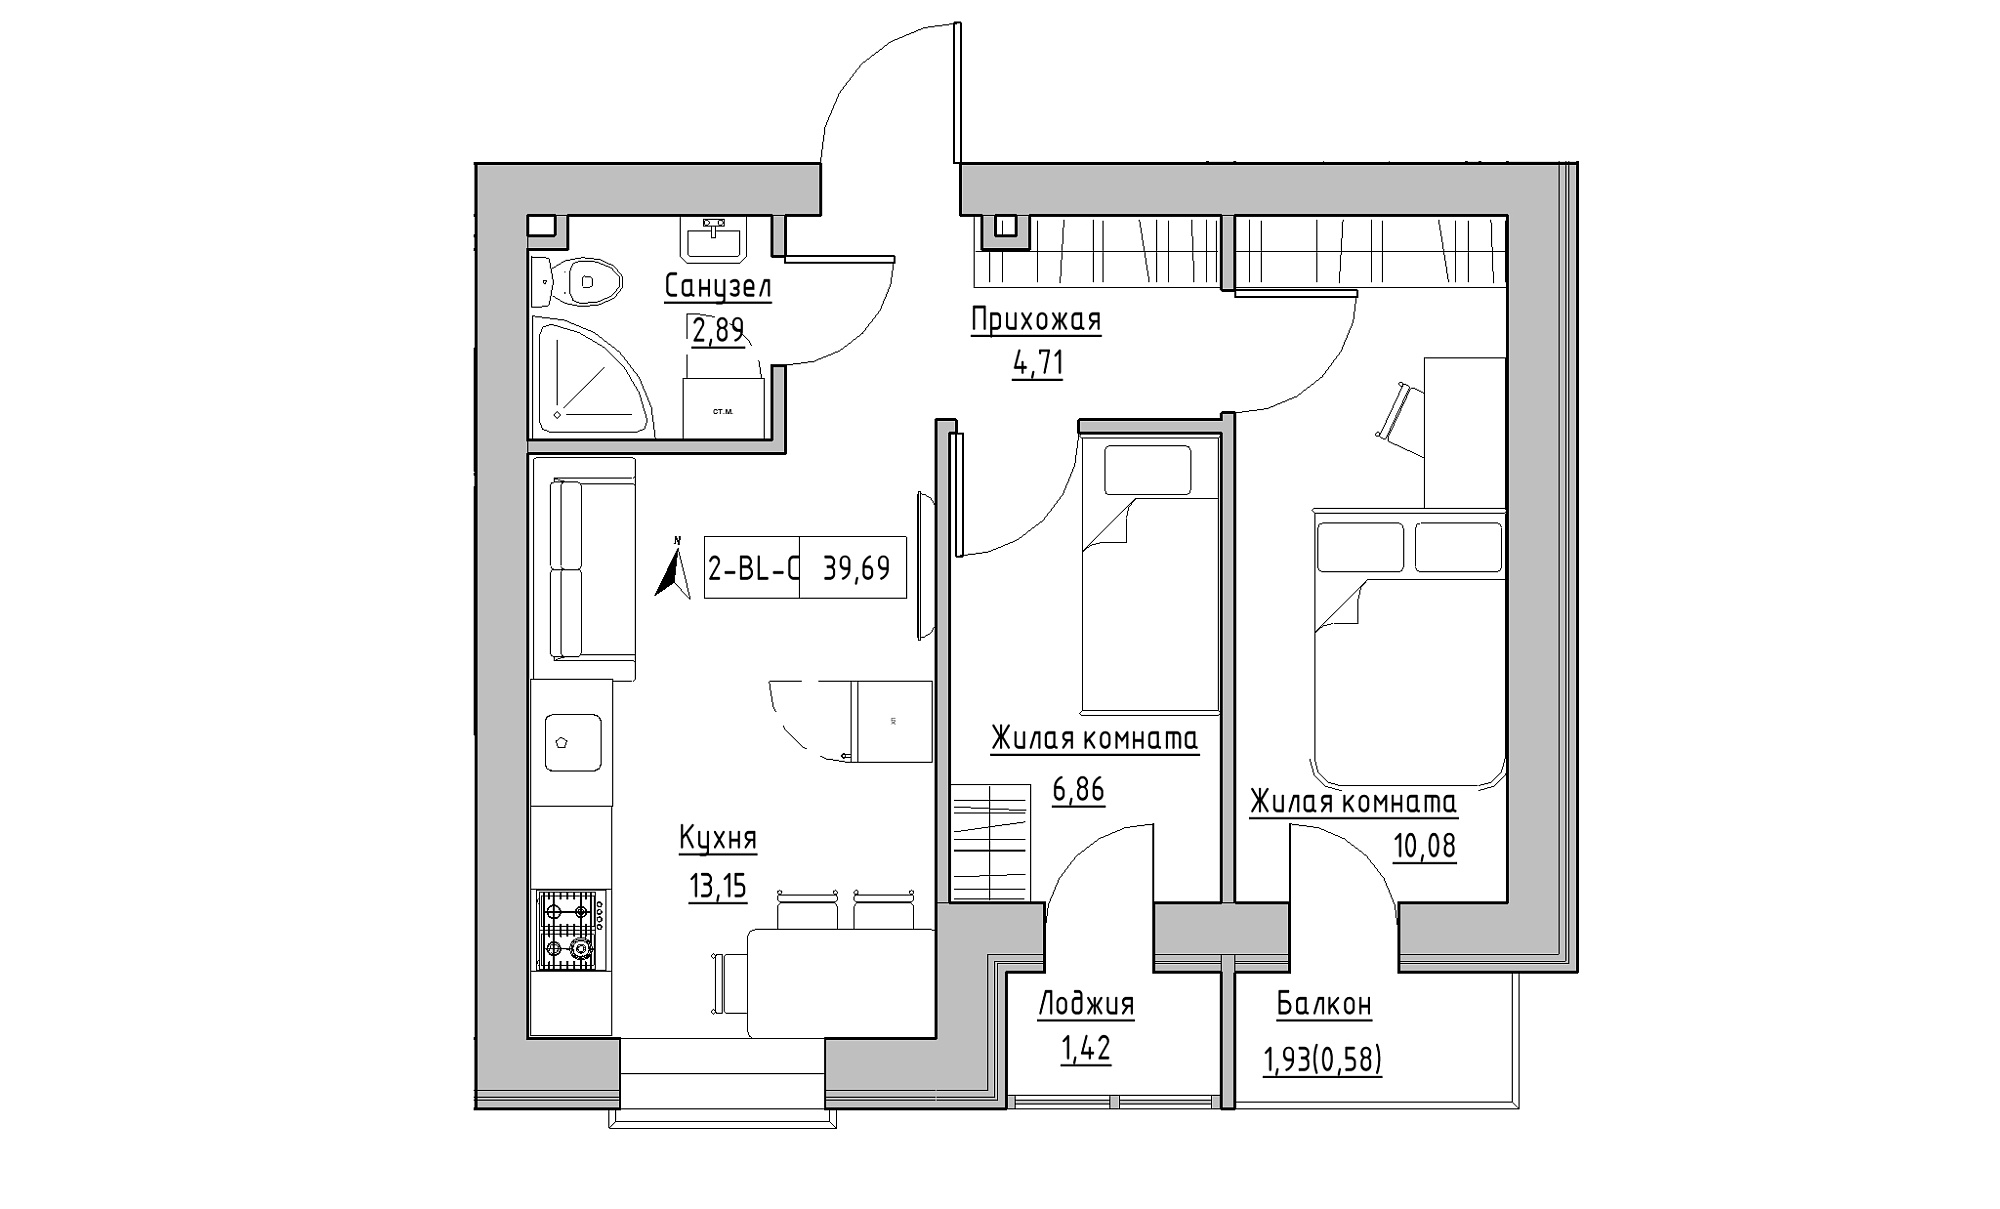 Планировка 2-к квартира площей 39.69м2, KS-016-03/0005.